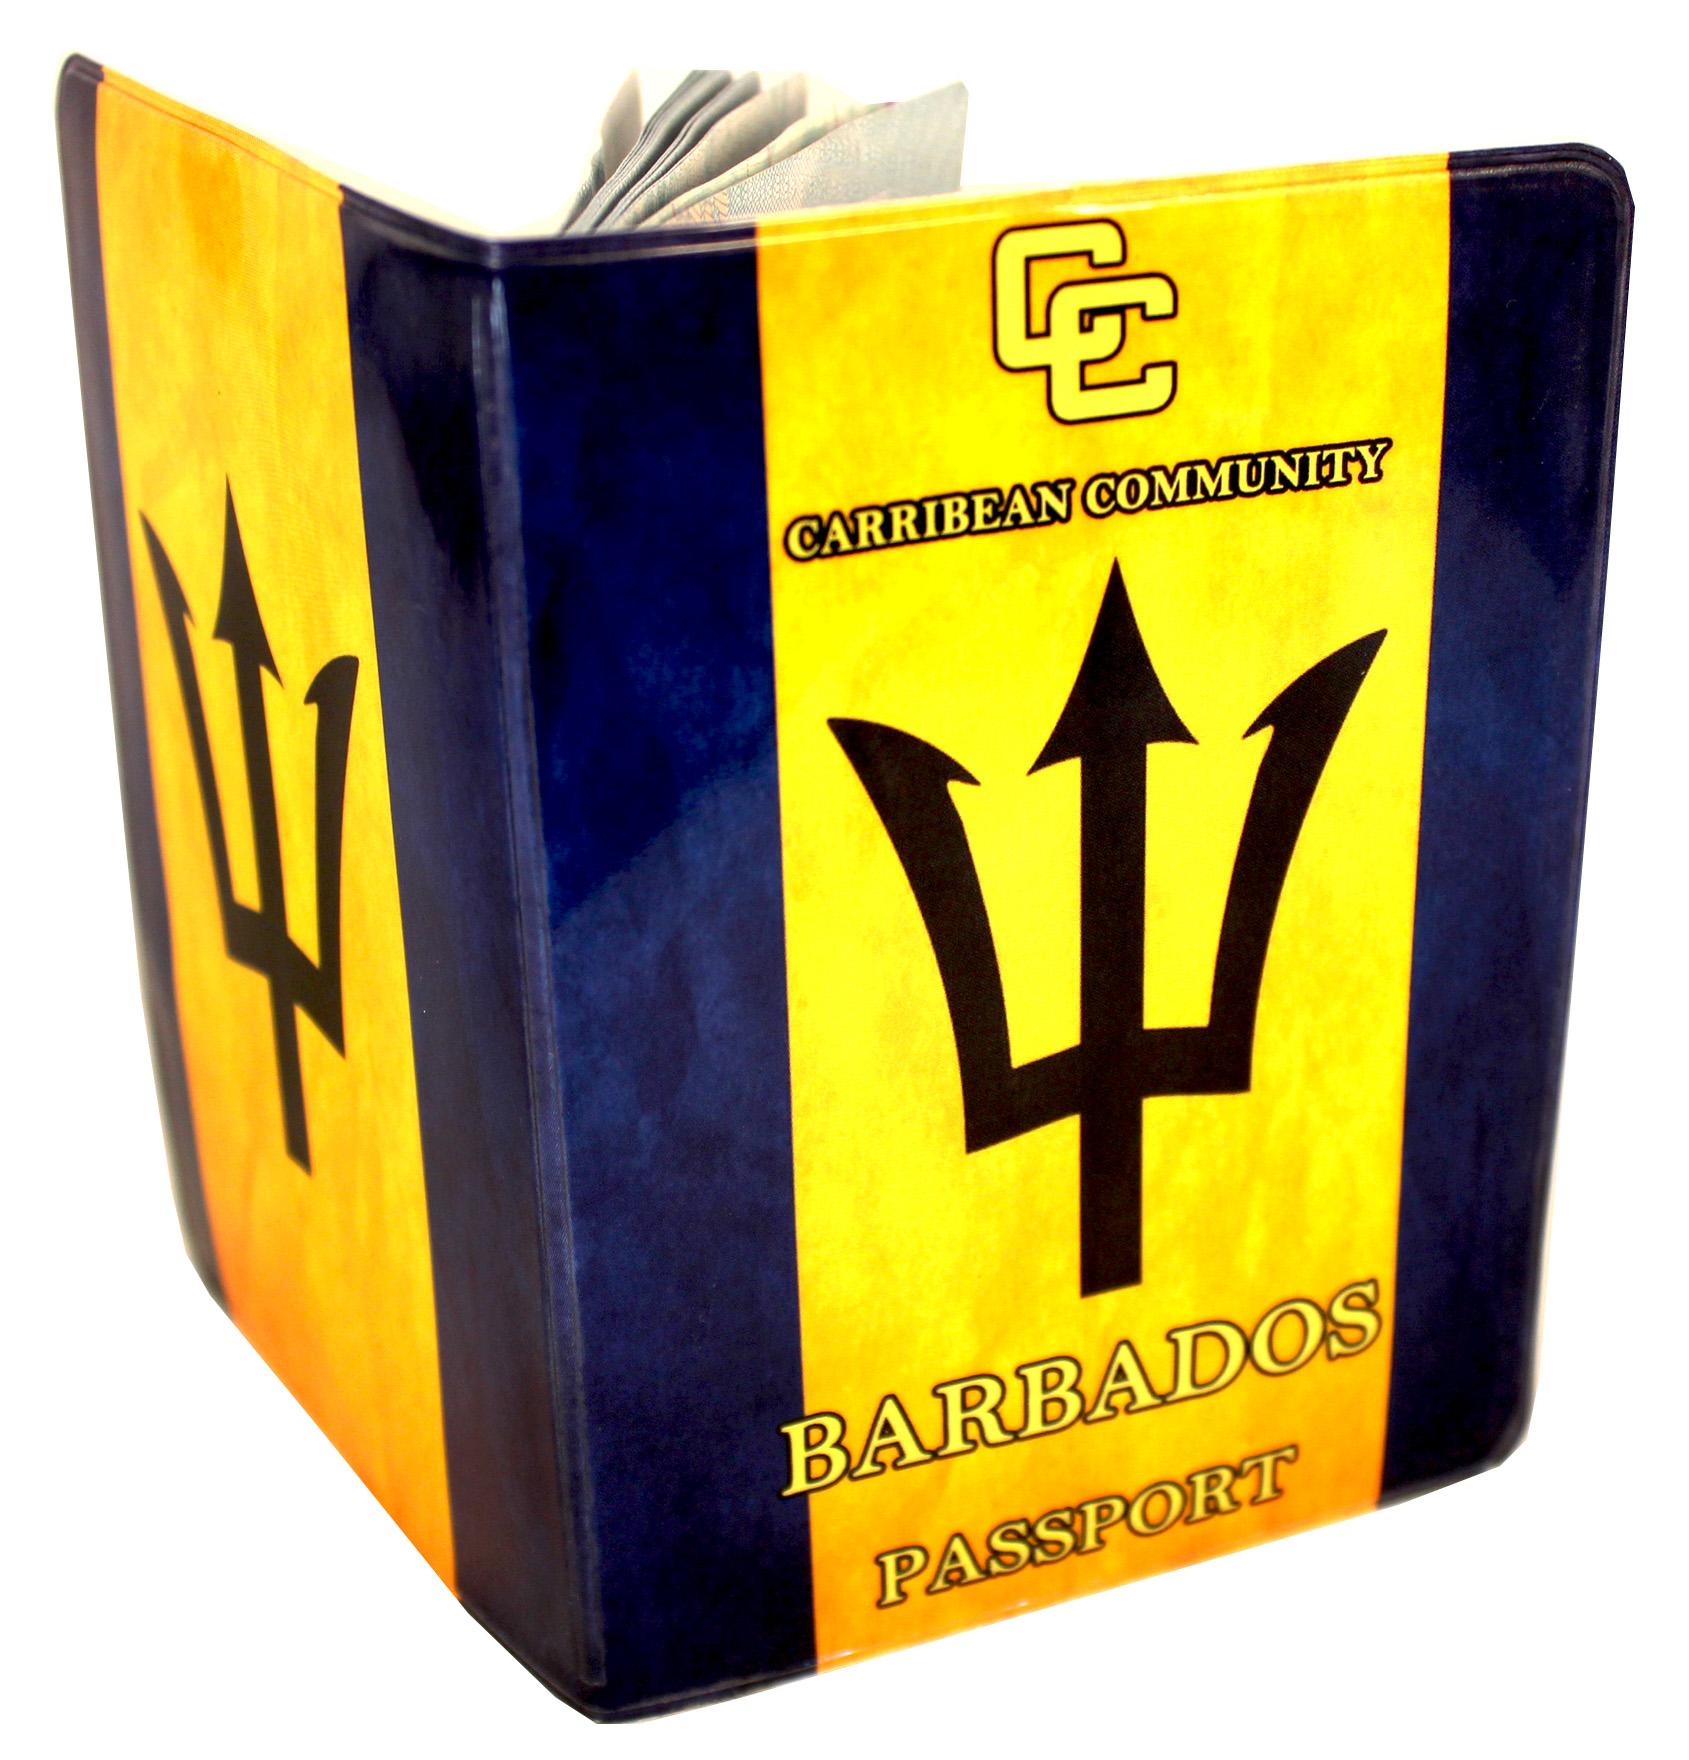 Barbados Passport Cover